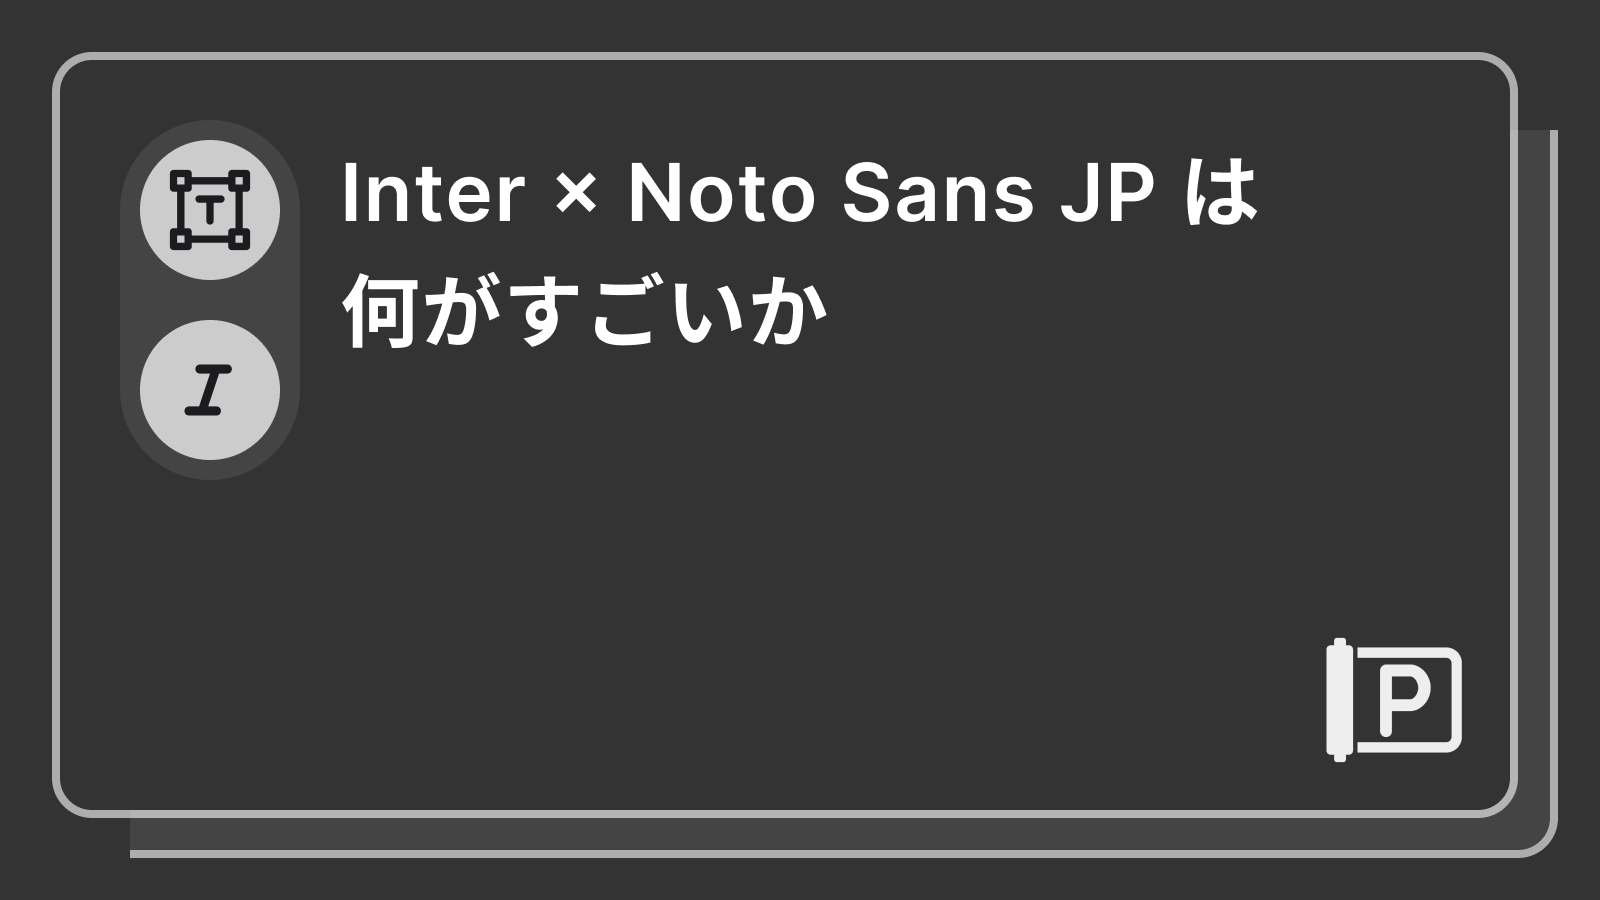 Inter × Noto Sans JP は何がすごいか